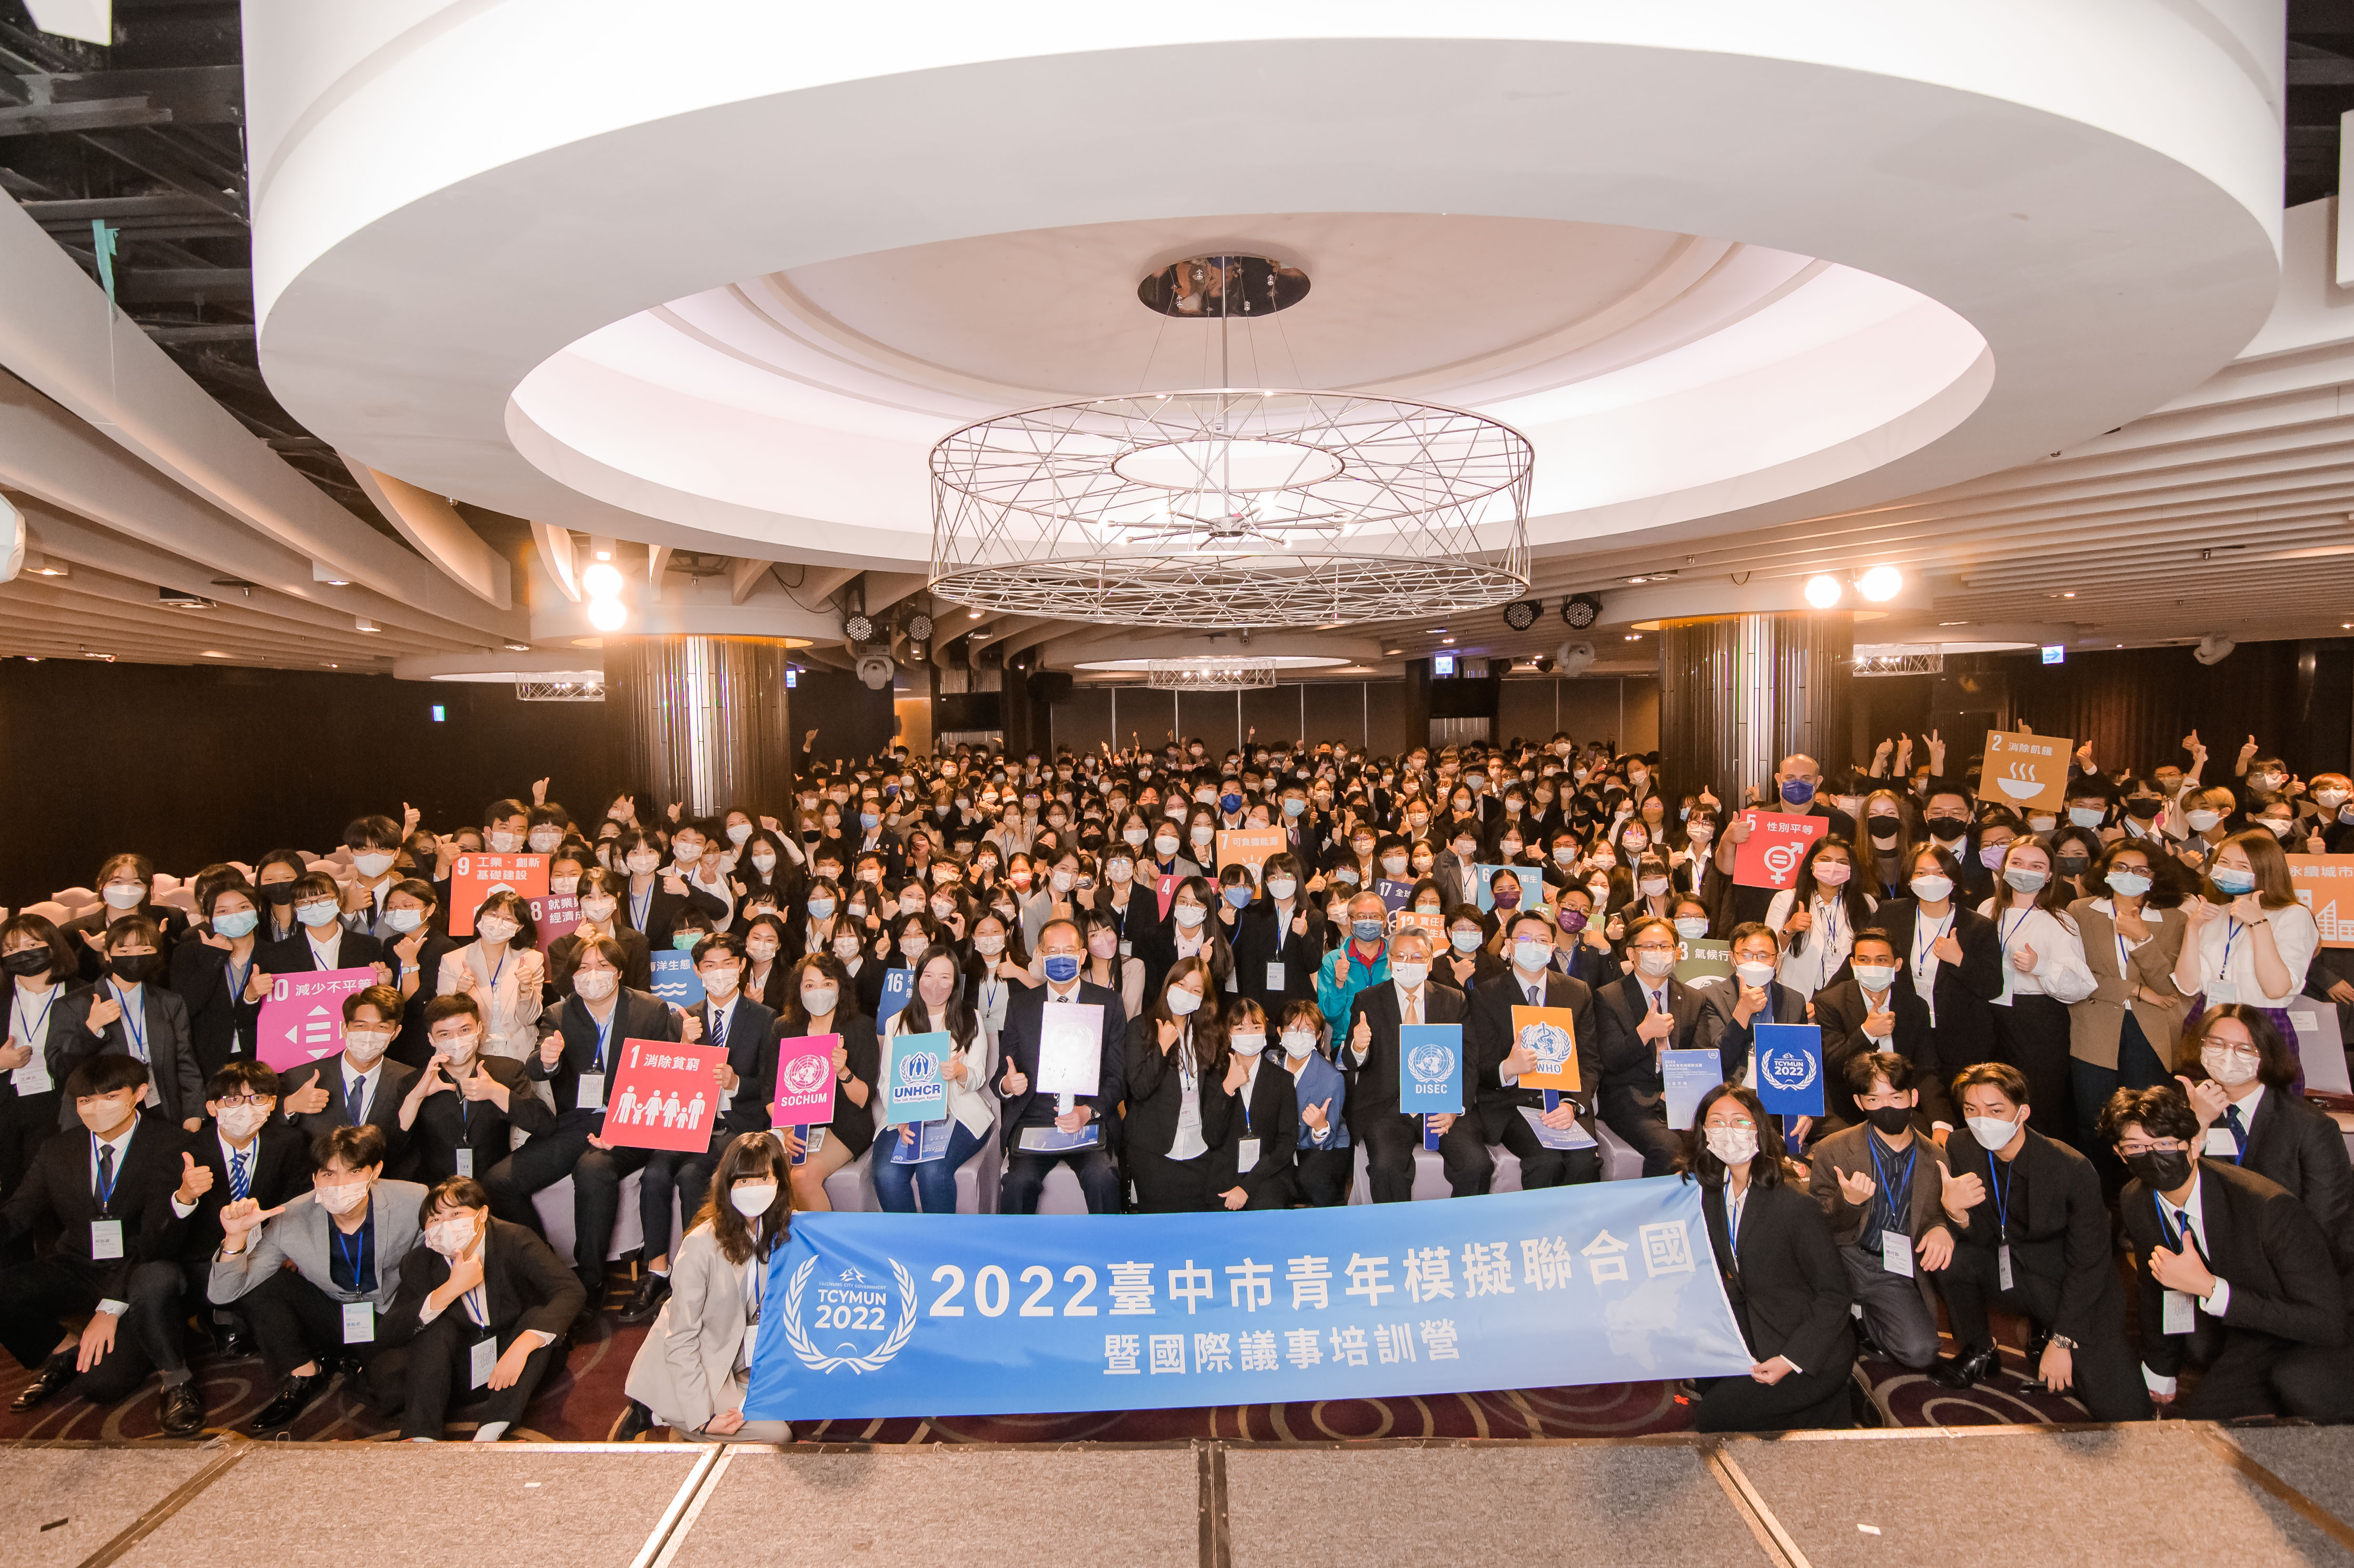 台中市青年模擬聯合國會議開幕 4百名師生齊聚拓展全球視野